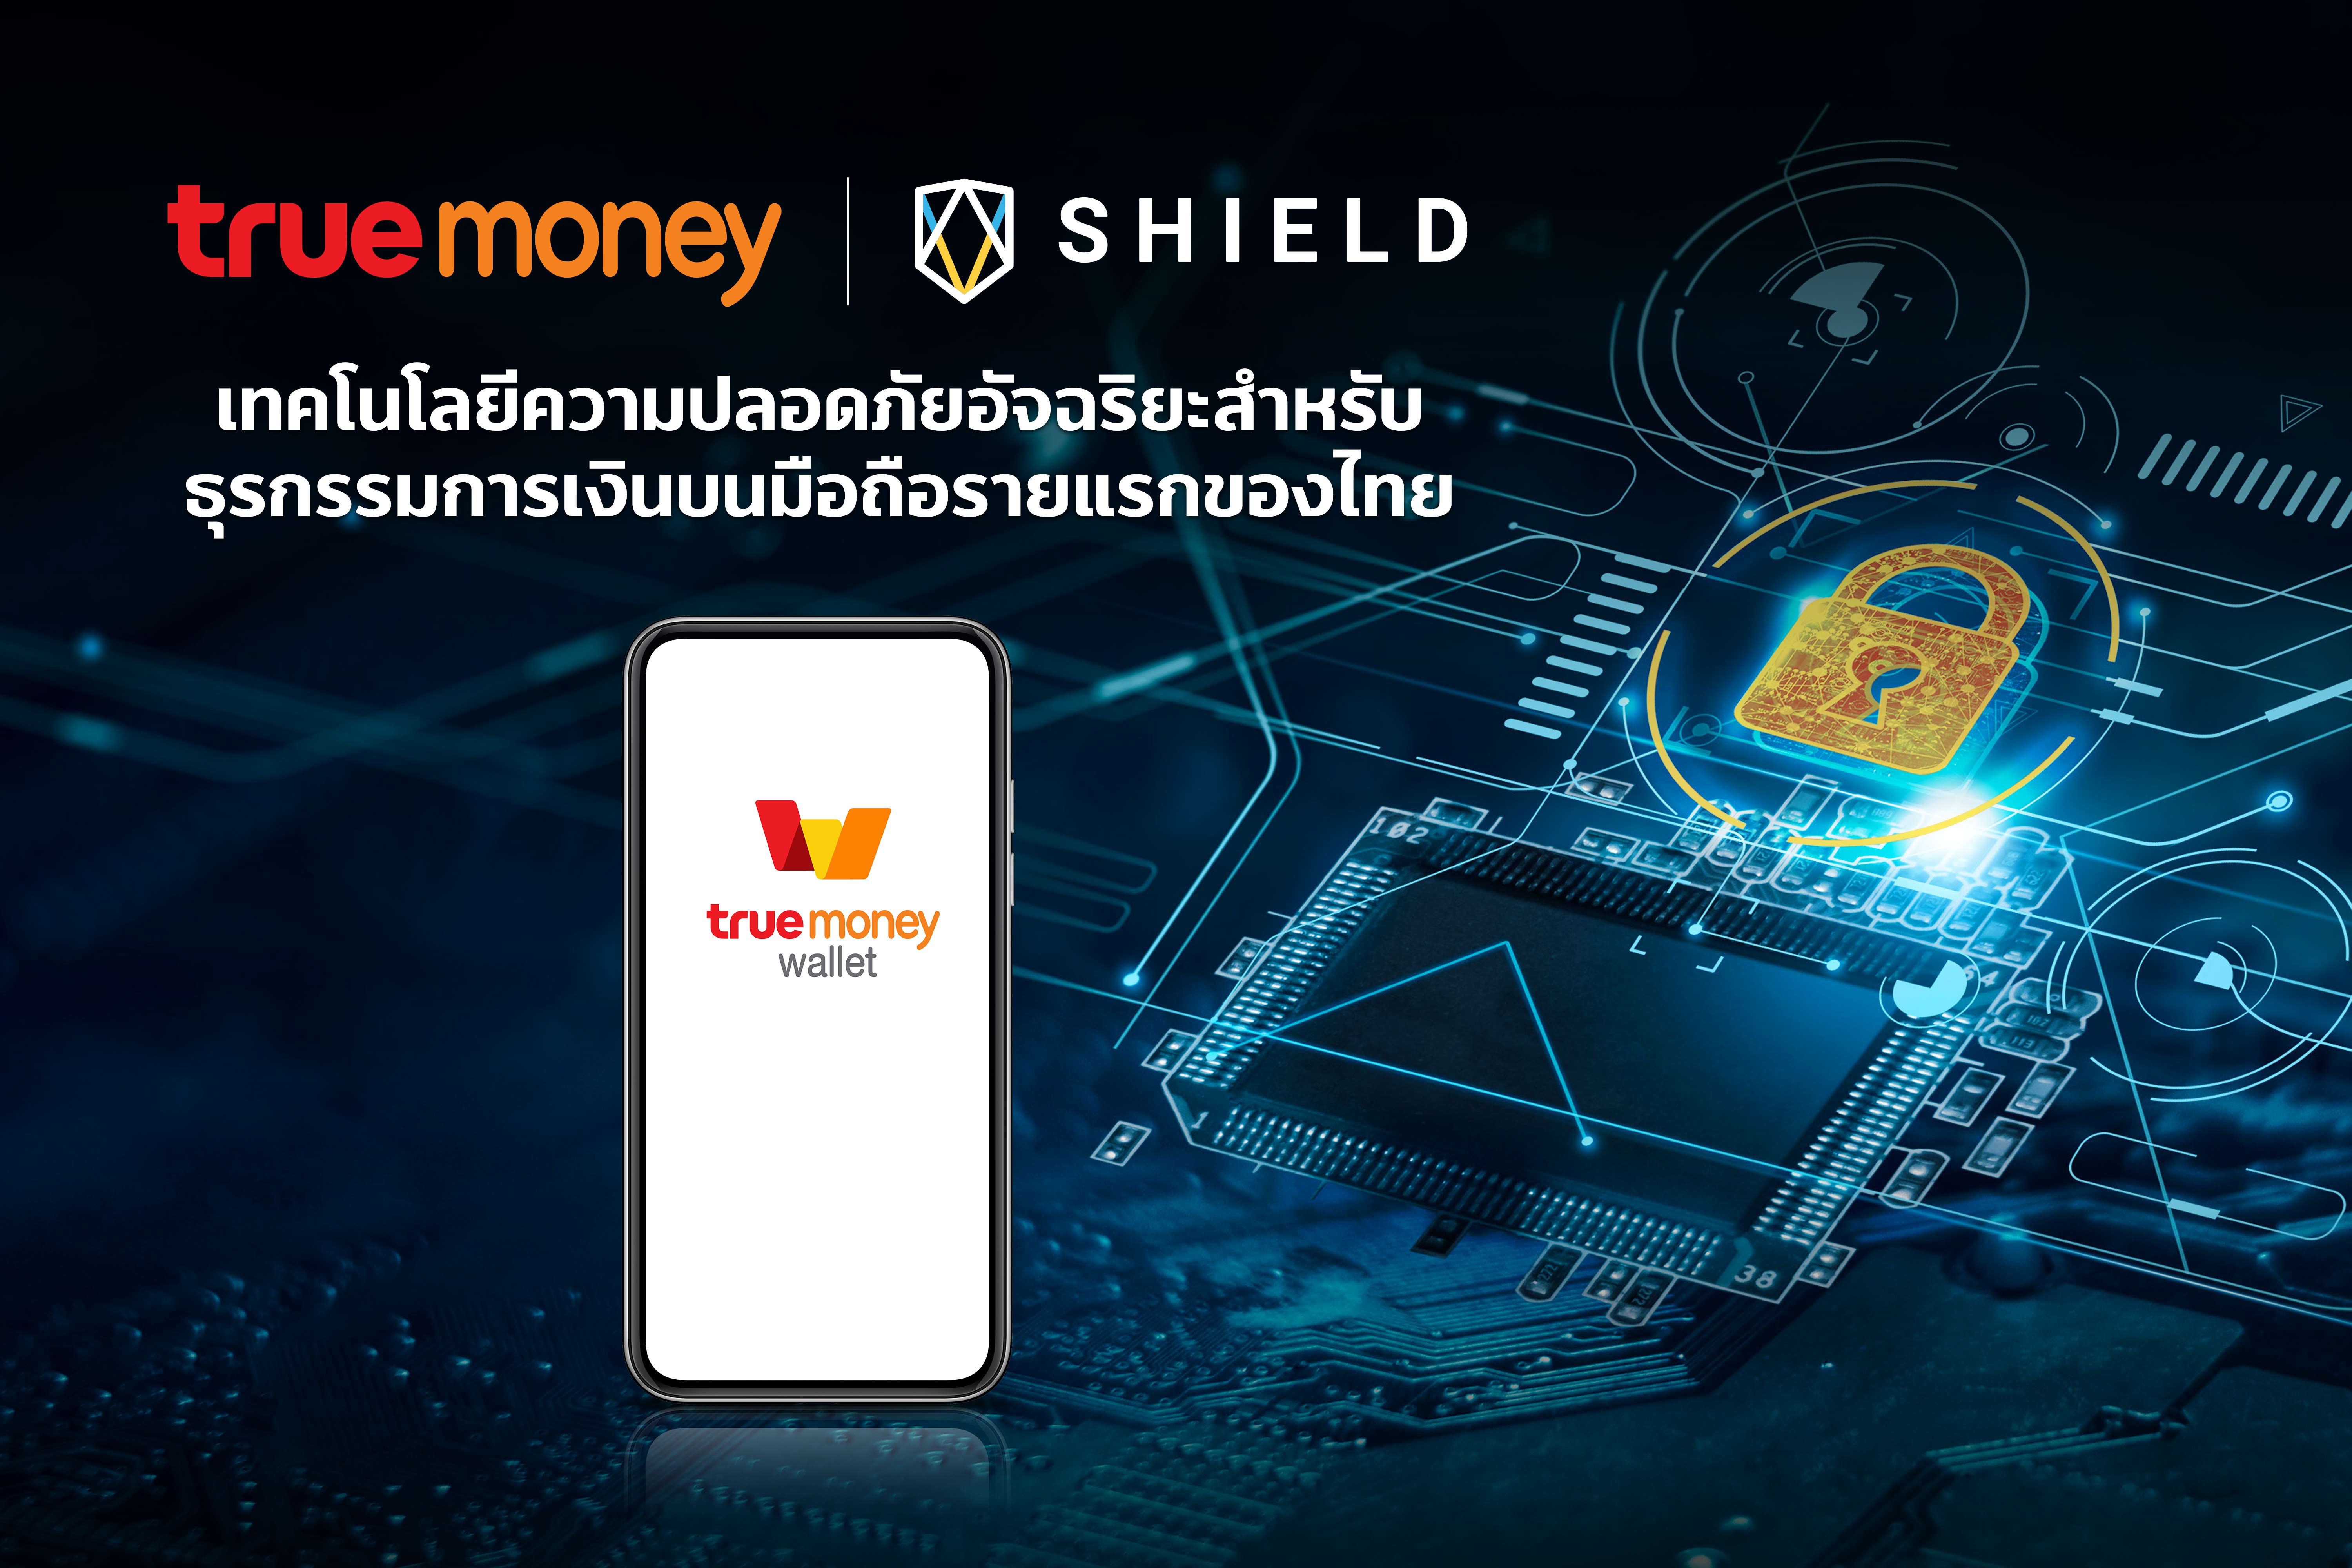 ทรูมันนี่ เพิ่มความมั่นใจให้กับผู้ใช้ ด้วยเทคโนโลยีความปลอดภัยอัจฉริยะ สำหรับธุรกรรมการเงินบนอุปกรณ์มือถือรายแรกของไทย